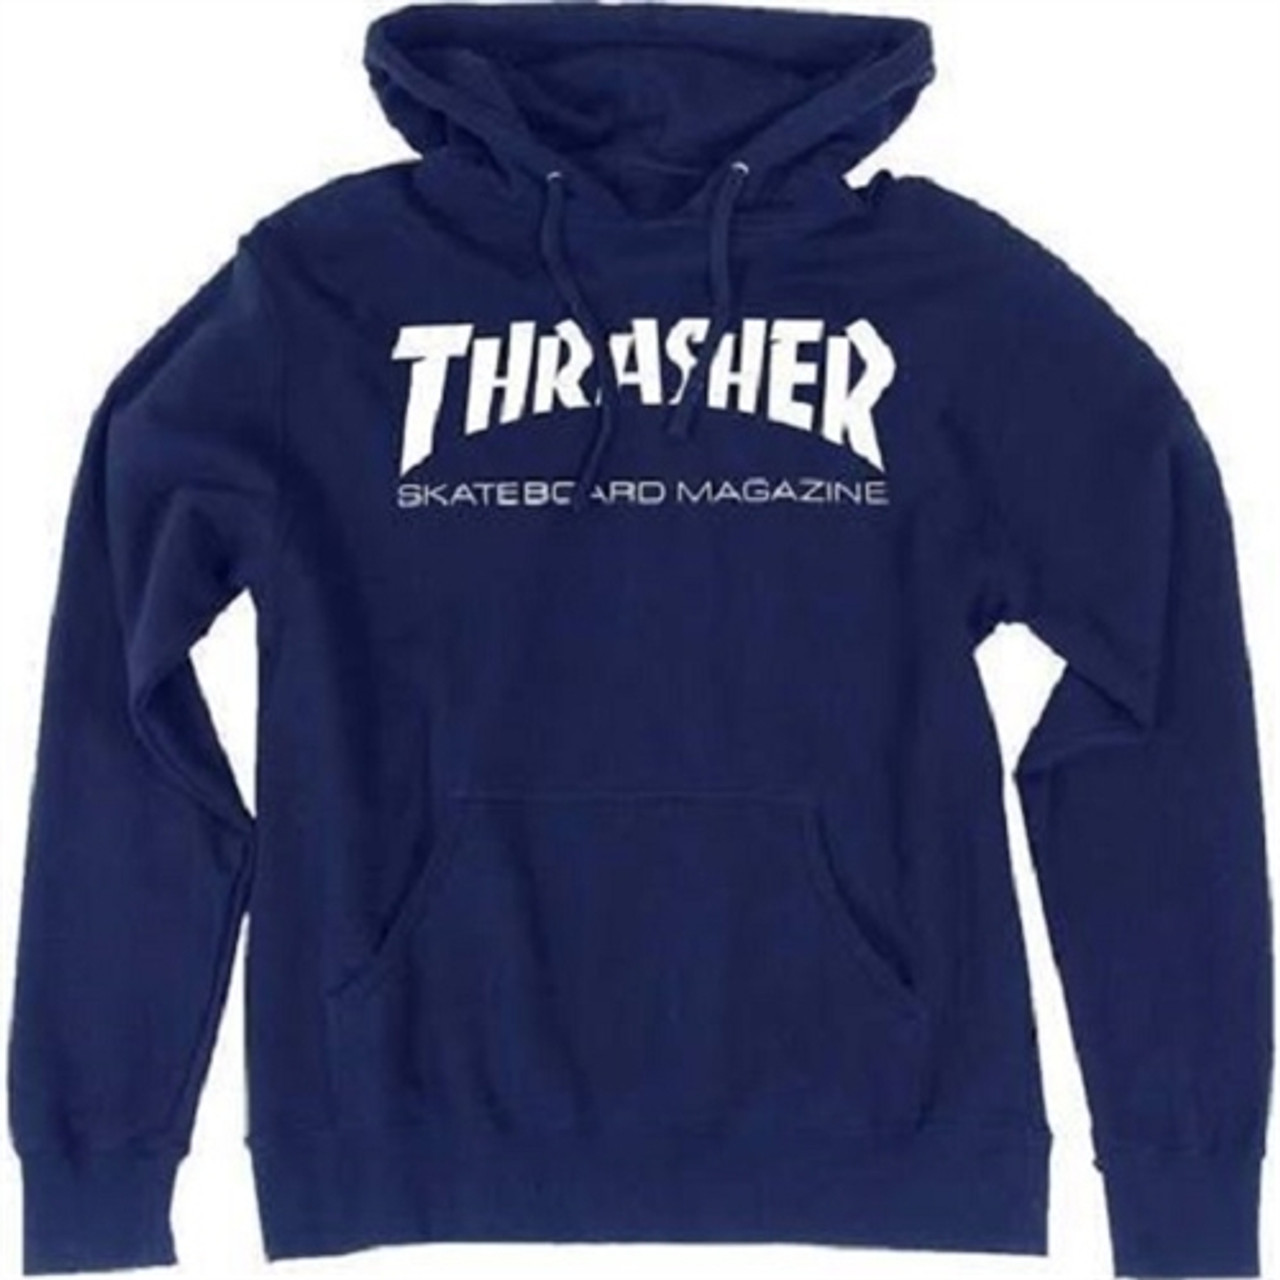 Thrasher Skate Mag Pullover Hoody Navy Medium